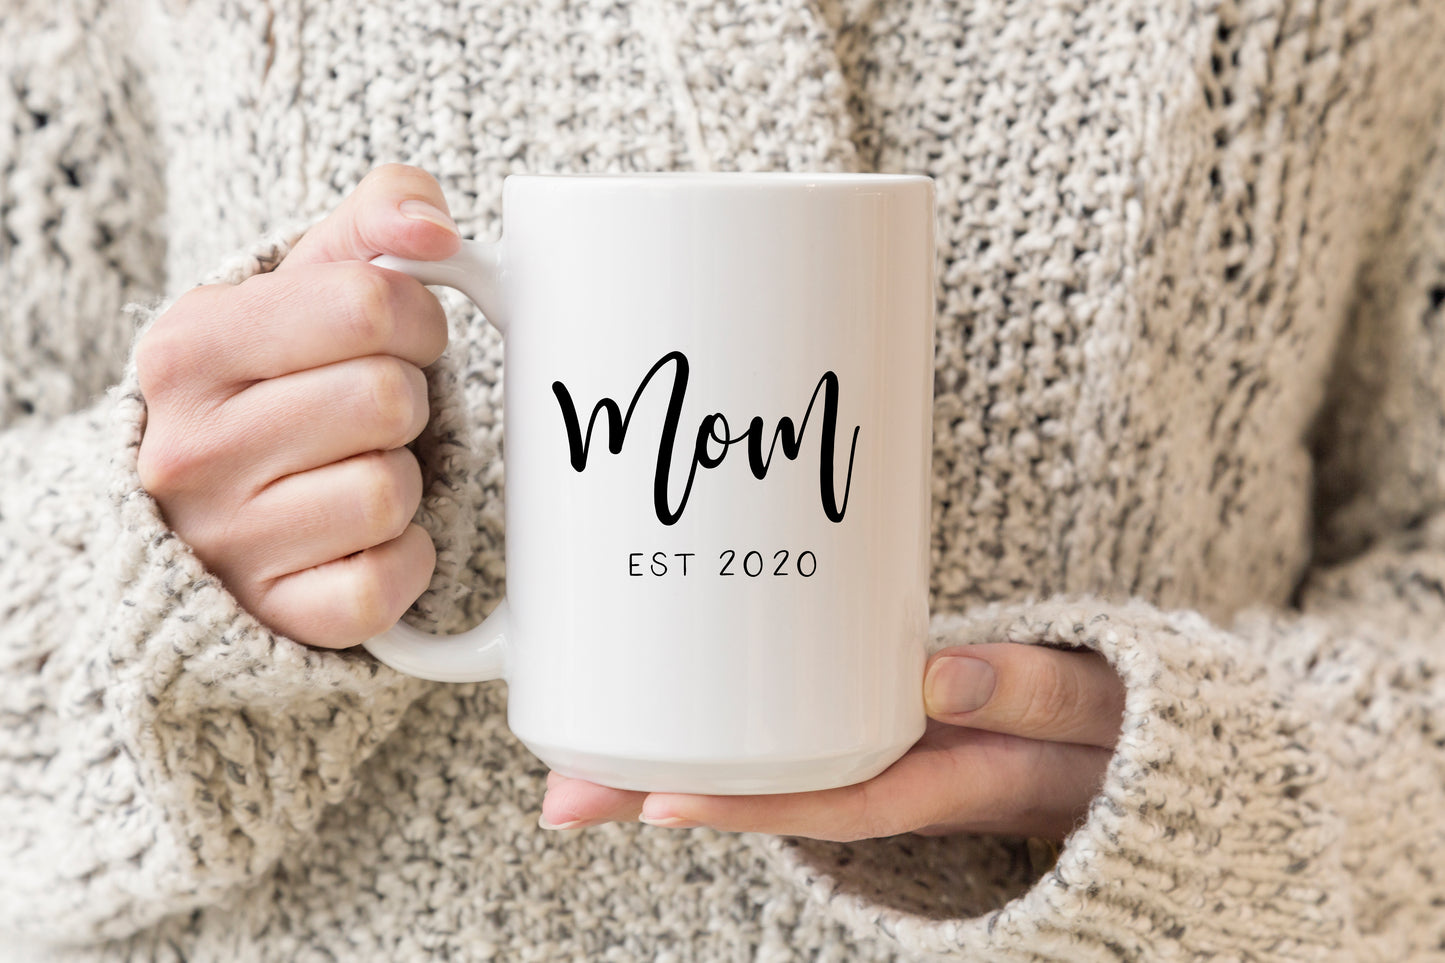 MOM EST 2023 Mug